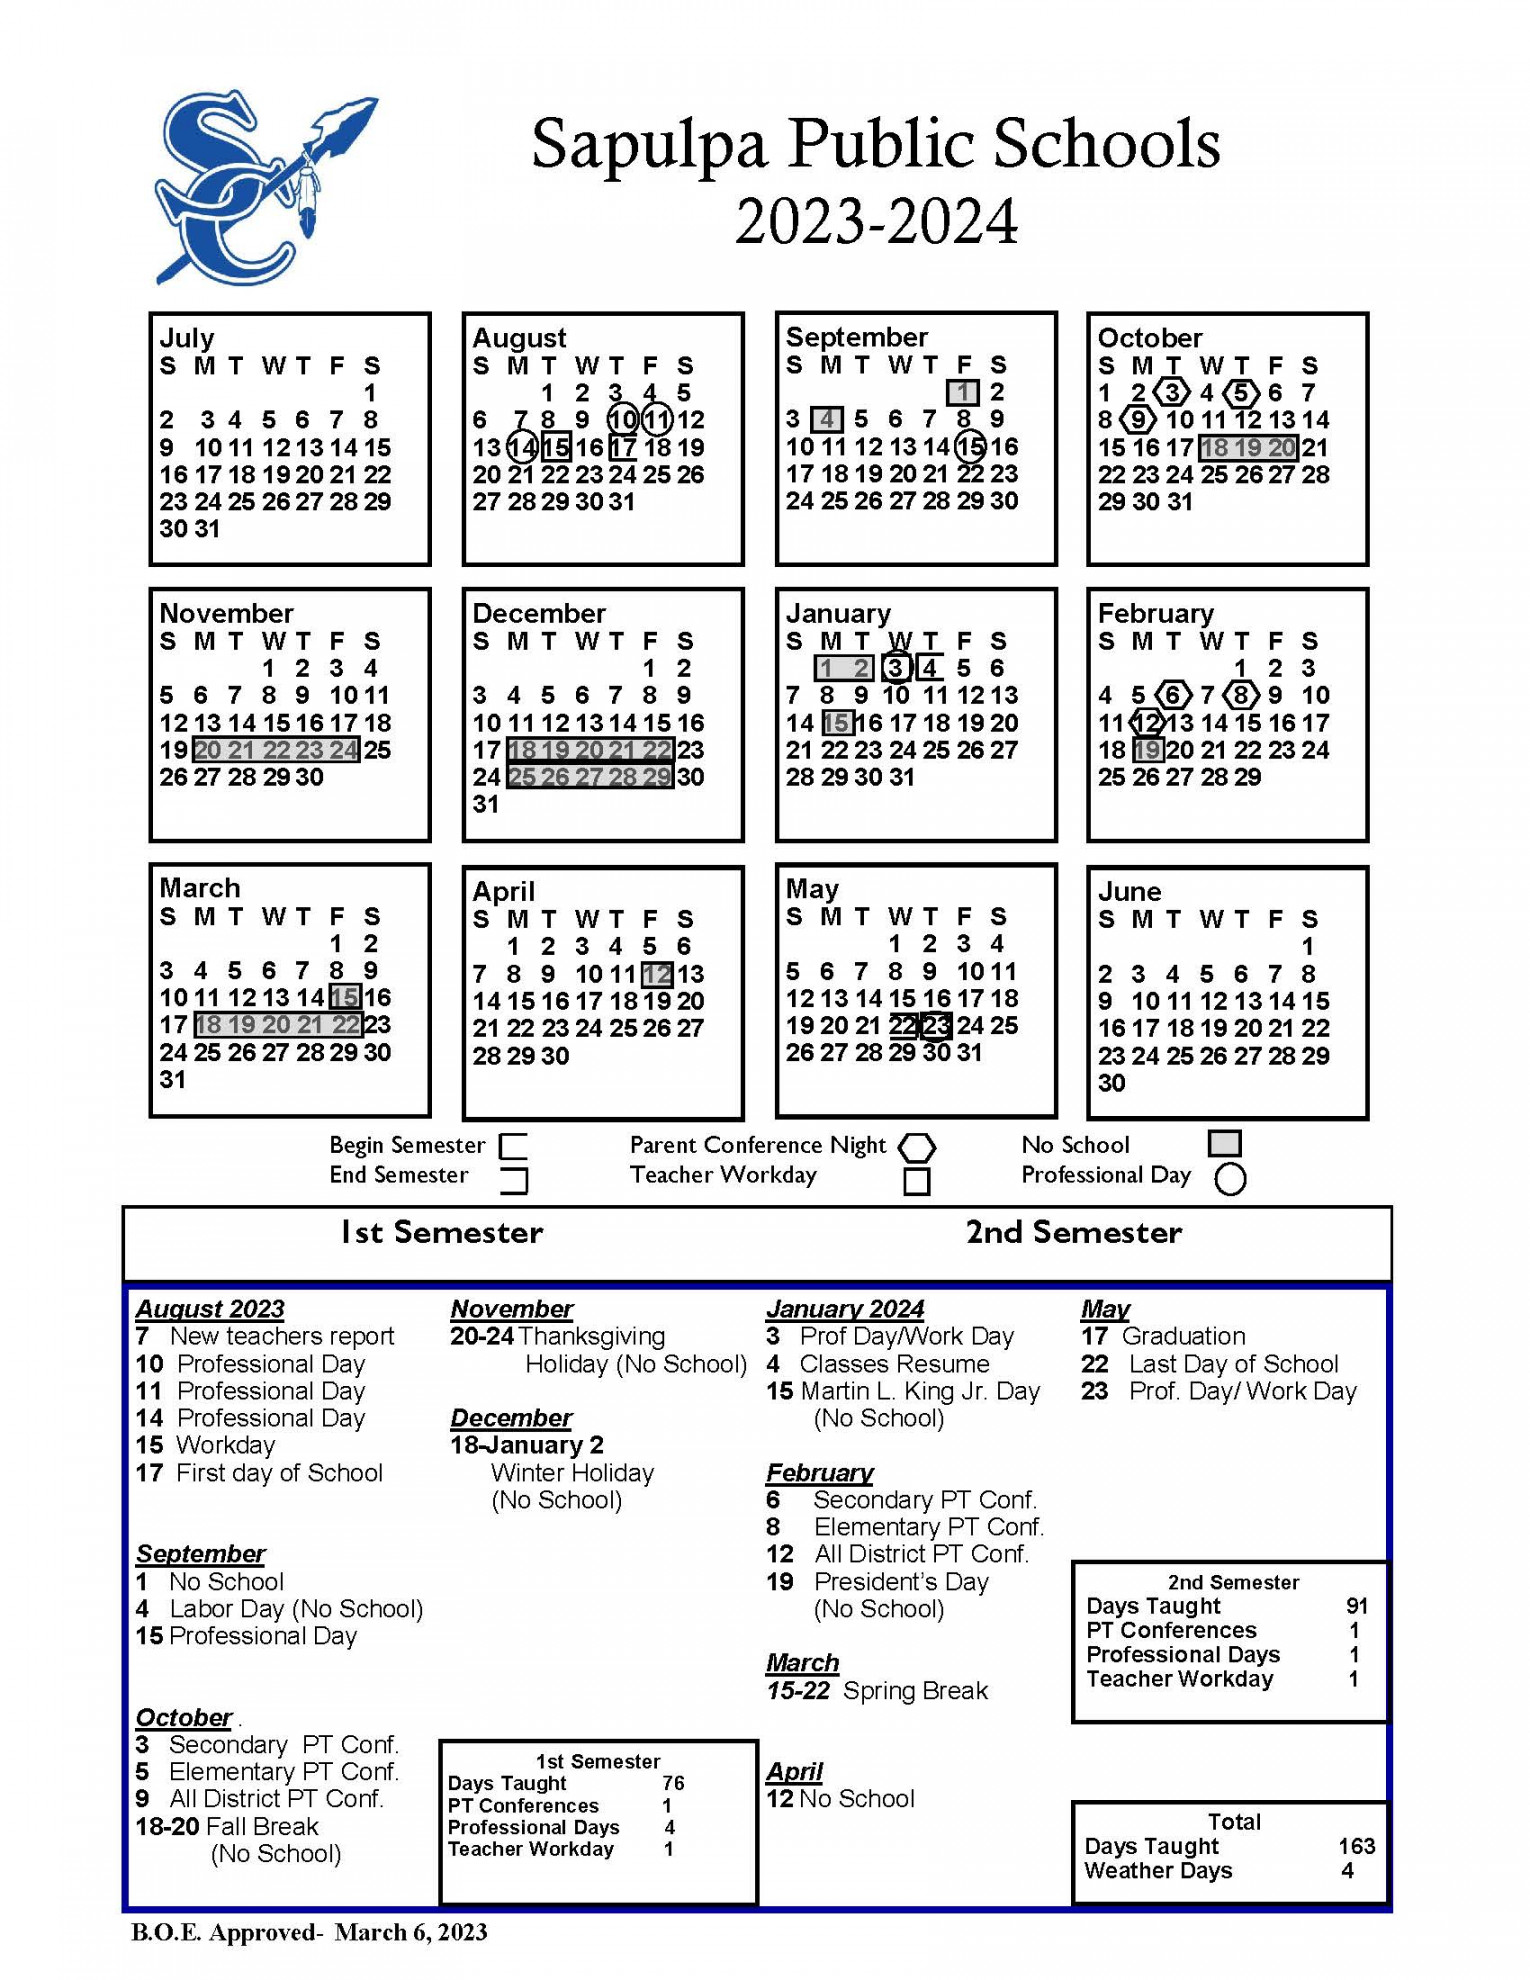 District Calendar - Sapulpa Public Schools